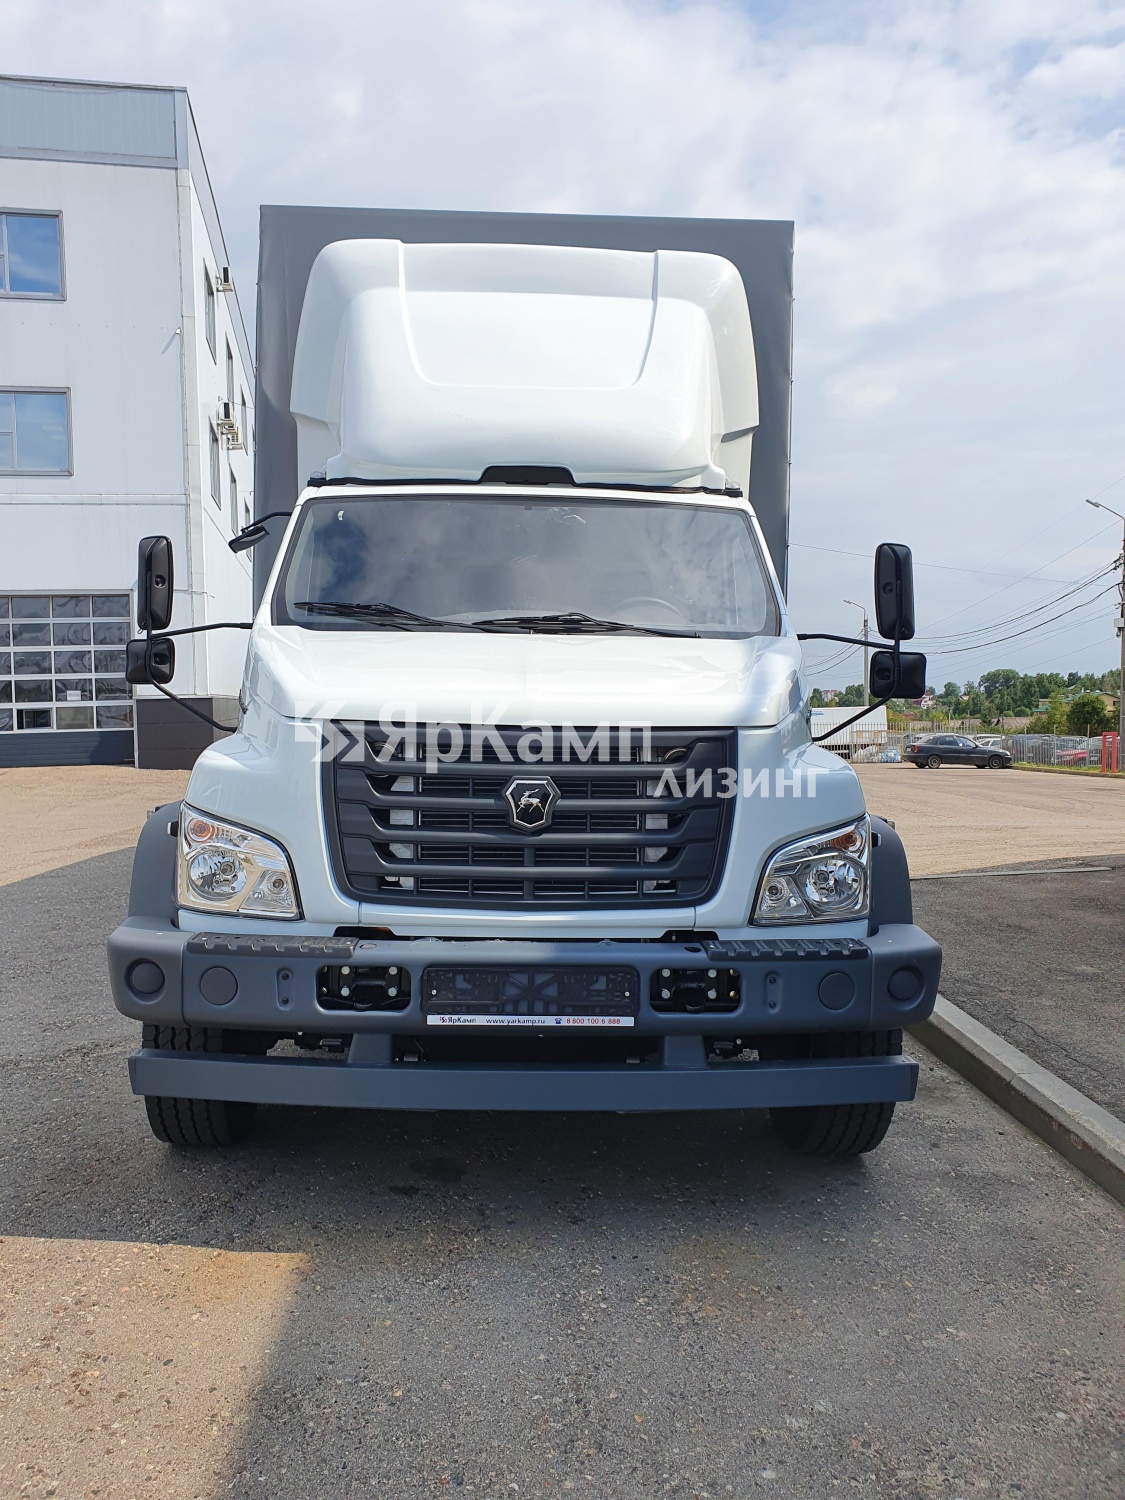 Европлатформа на базе ГАЗ-С41RB3 передана в лизинг